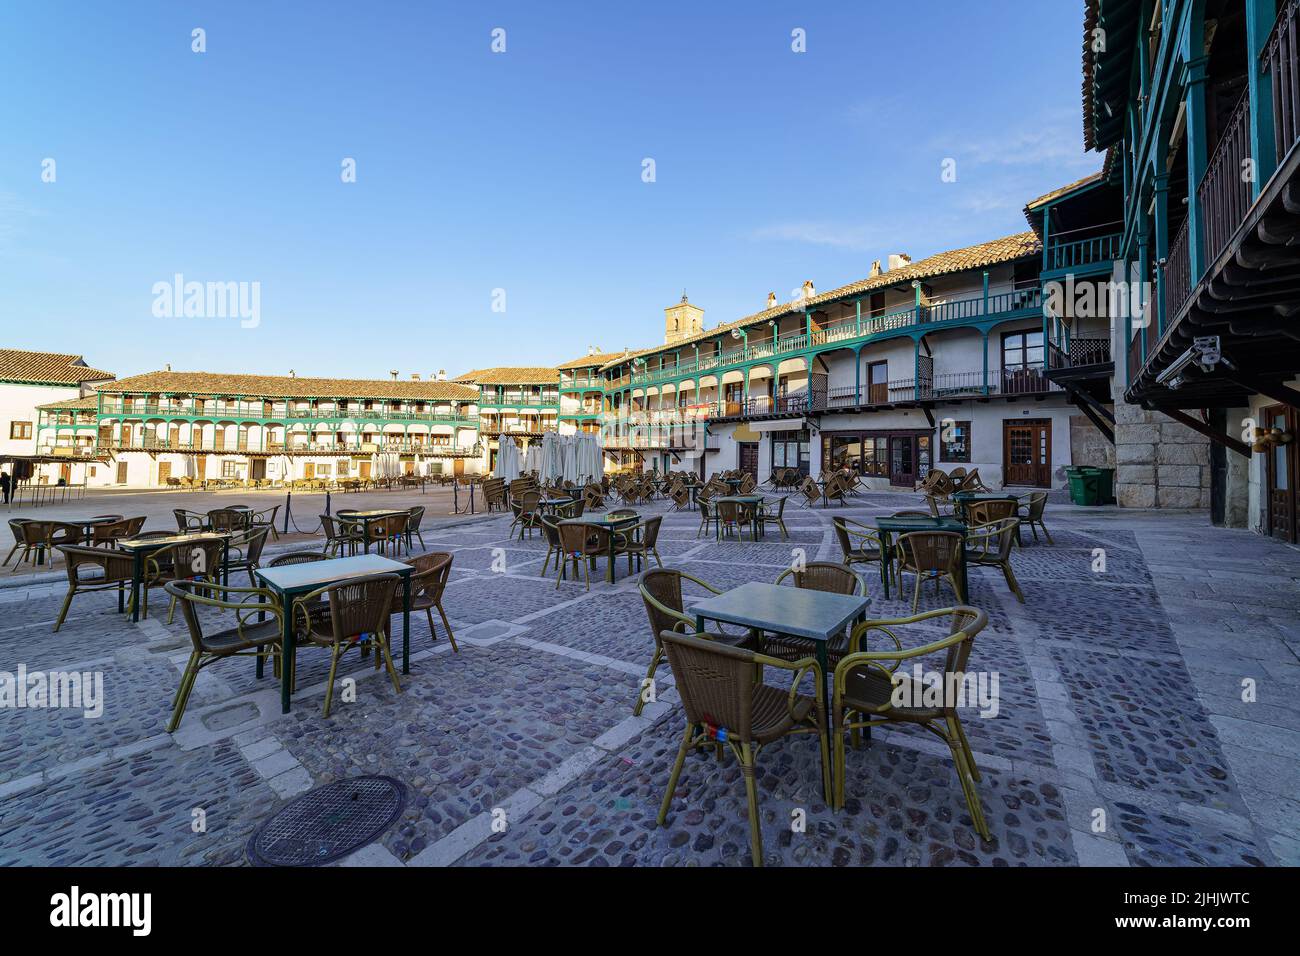 Zentraler Platz einer alten Stadt in Spanien mit Tischen und Stühlen zum Sitzen. Chichon, Madrid. Stockfoto